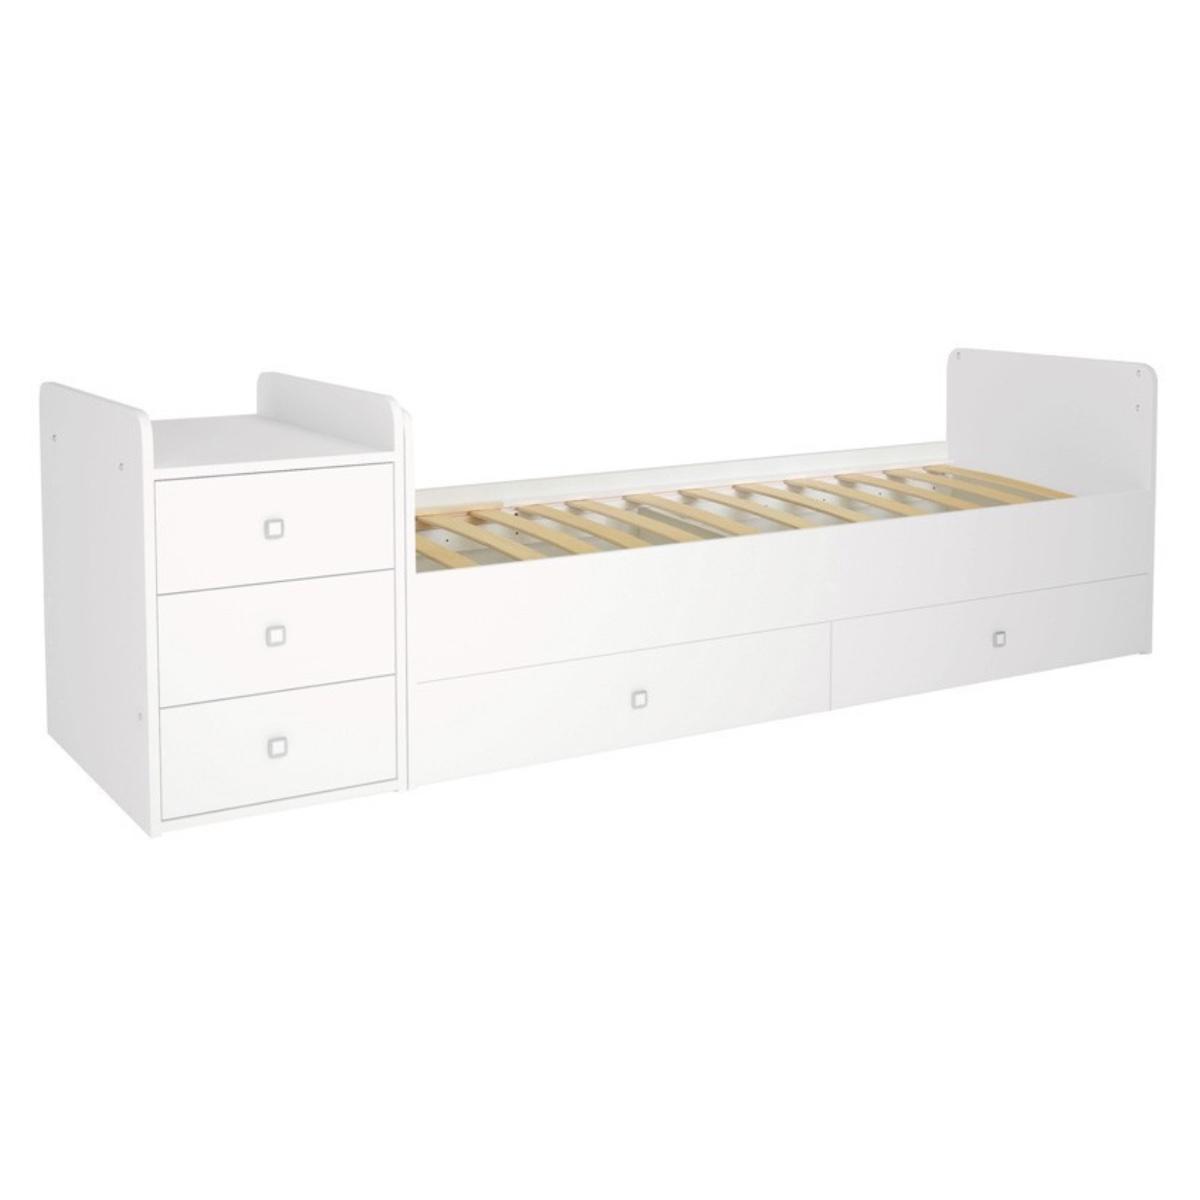 Wielofunkcyjne łóżeczko dziecięce 124x90x66 cm 4w1 białe do pokoju dziecięcego nr. 6